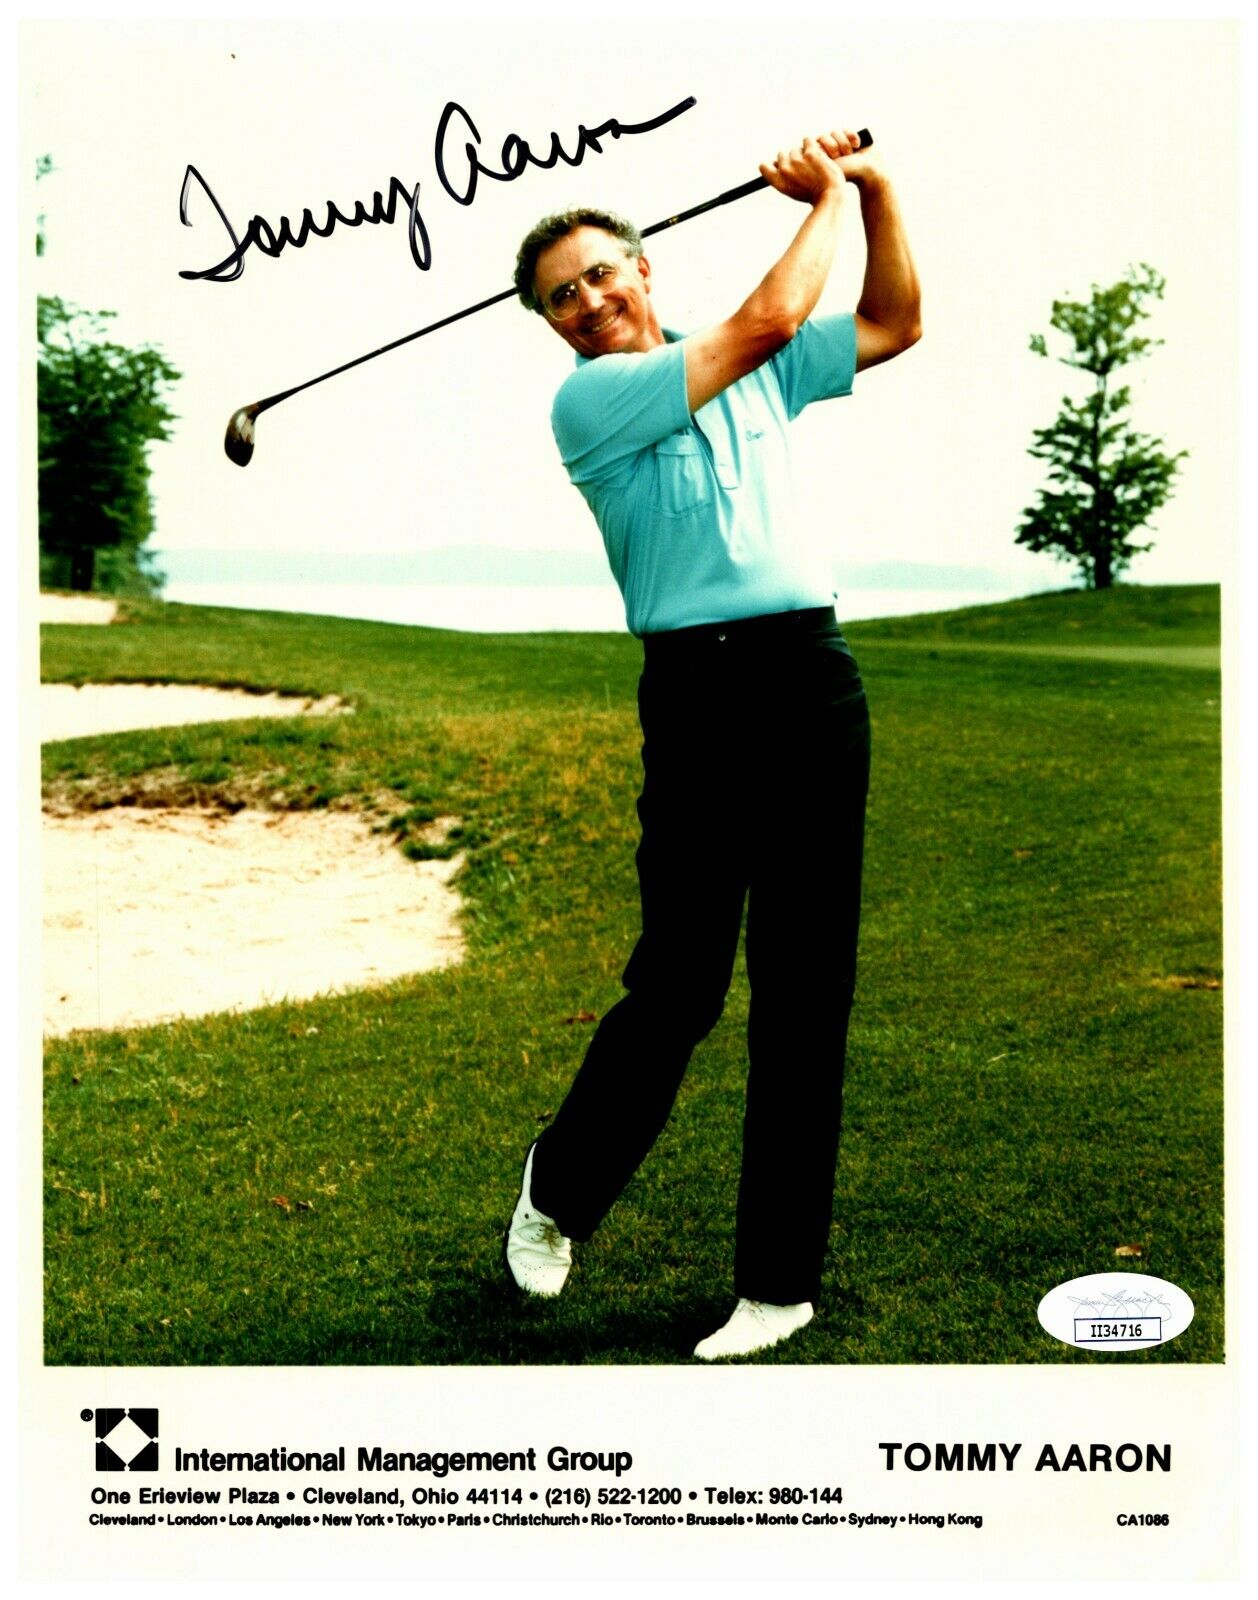 Tommy Aaron Golfer Vintage Autographed Signed Color Photo JSA